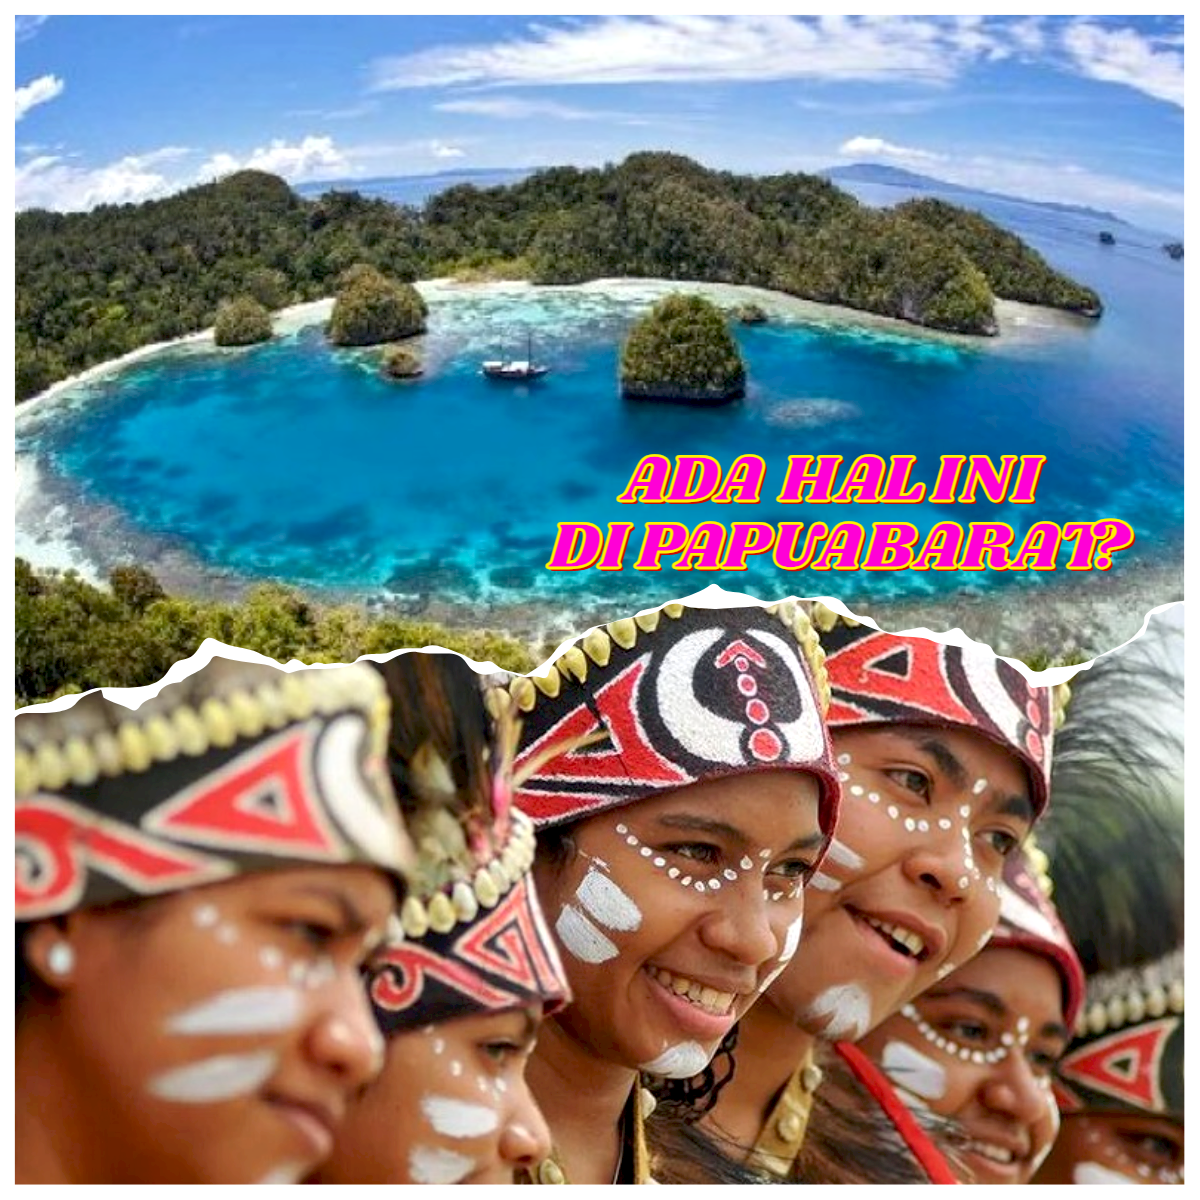 Papua Barat Dan 9 Fakta Unik Yang Harus Kamu Ketahui!